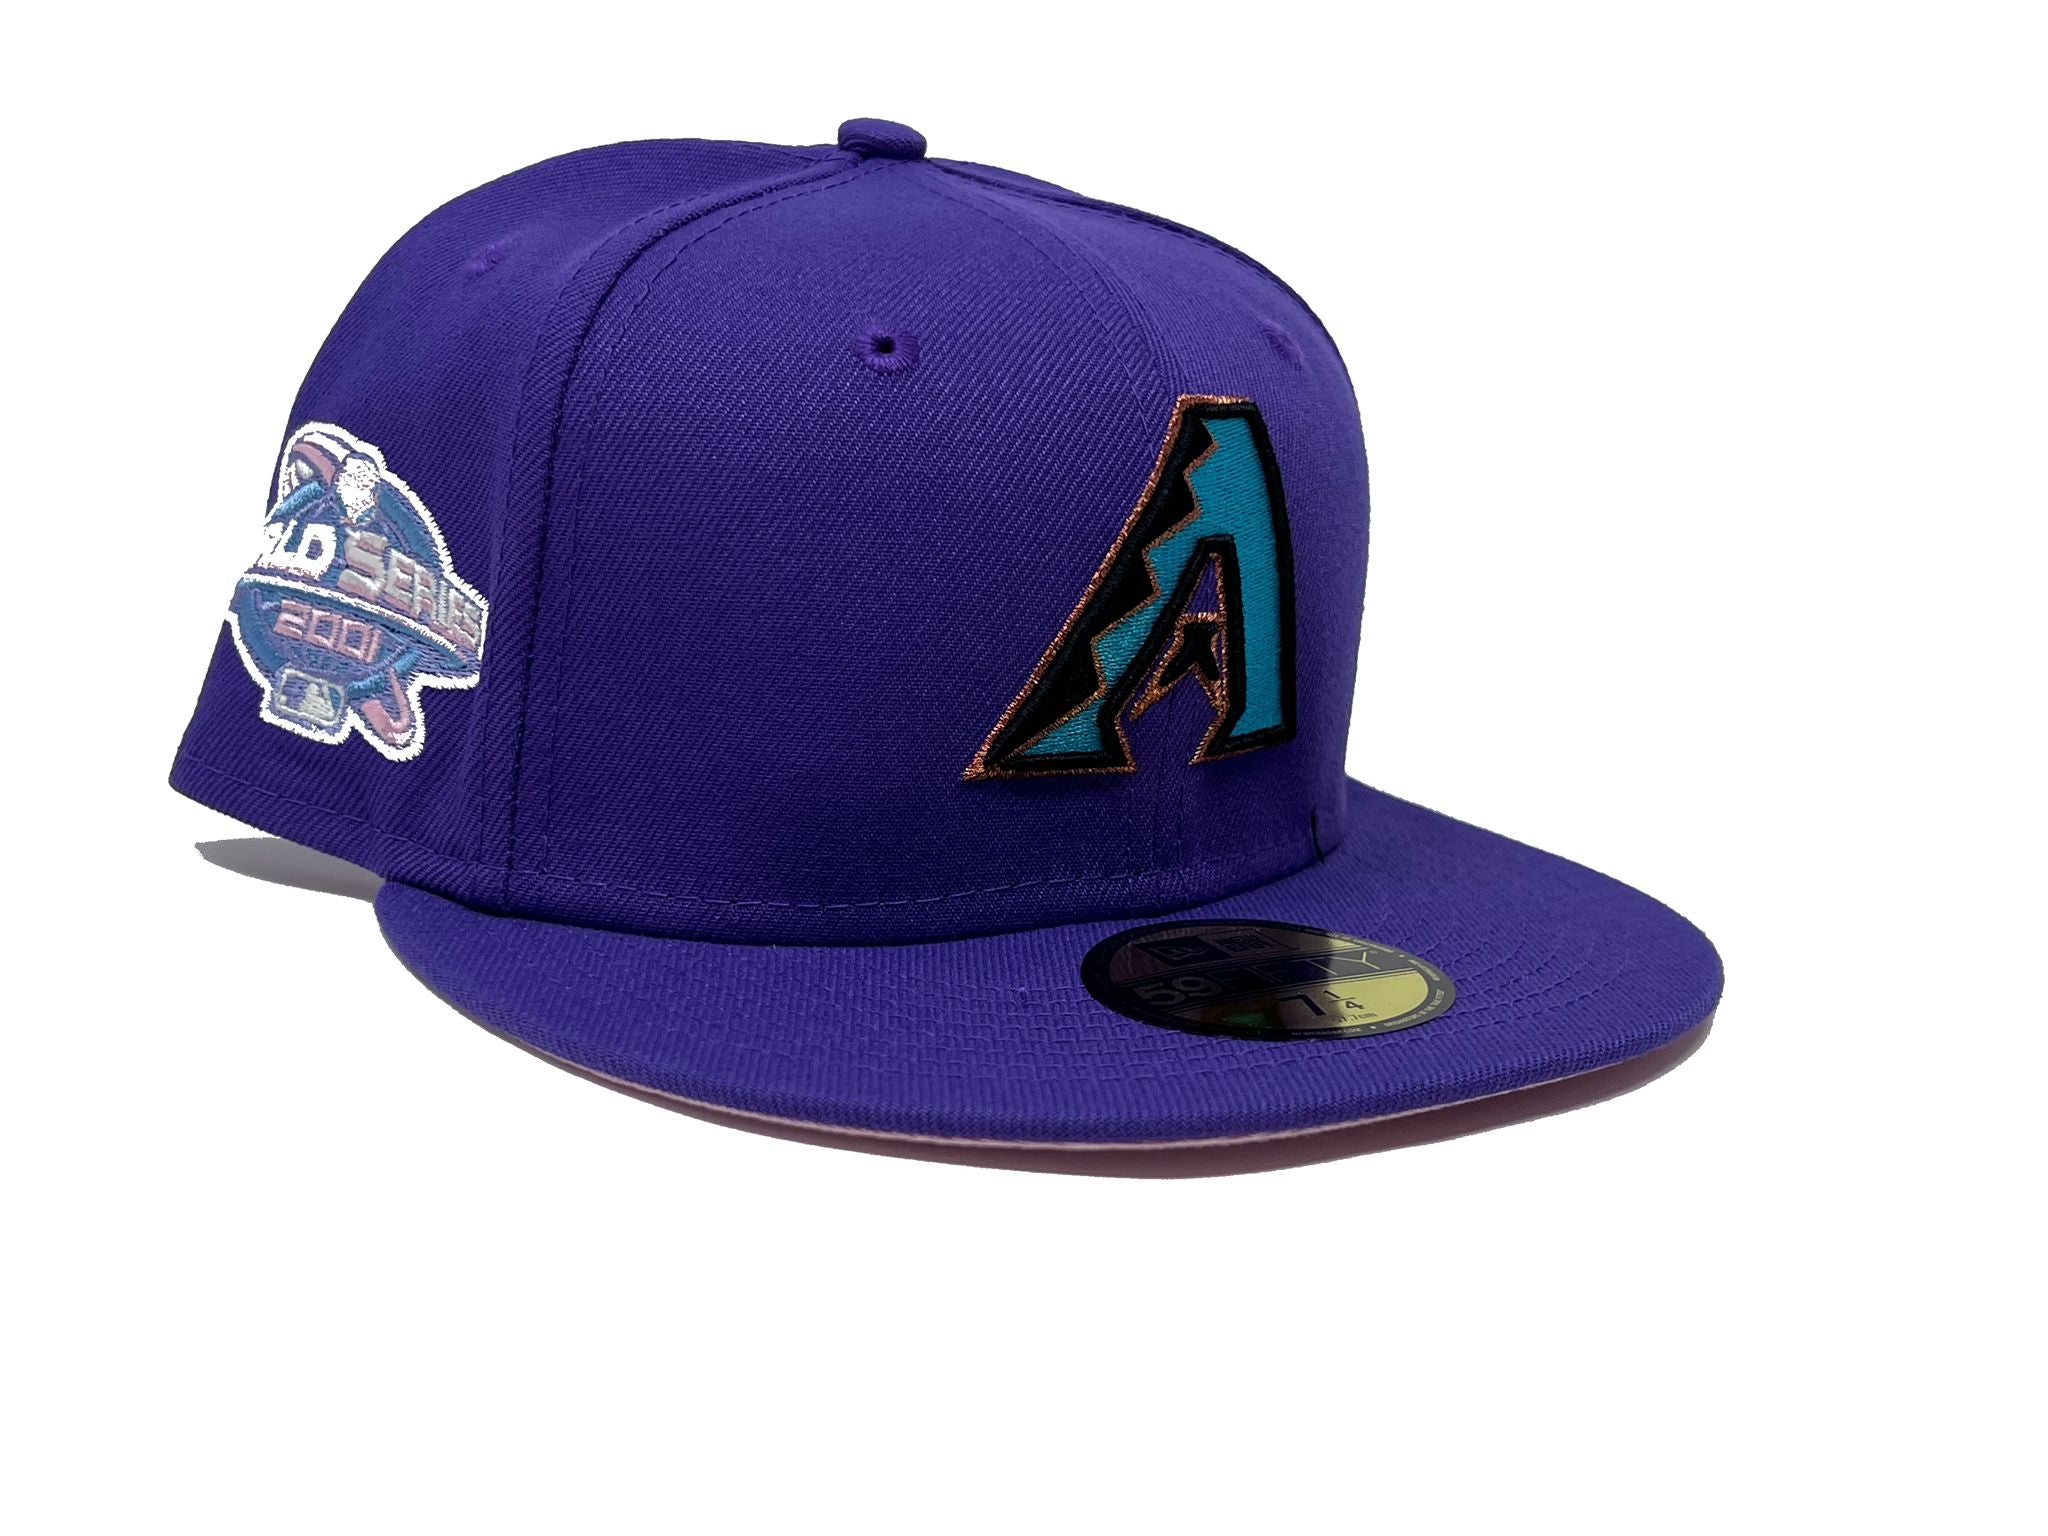 MLB x NBA city connect Arizona Diamondbacks hat by Alltheright